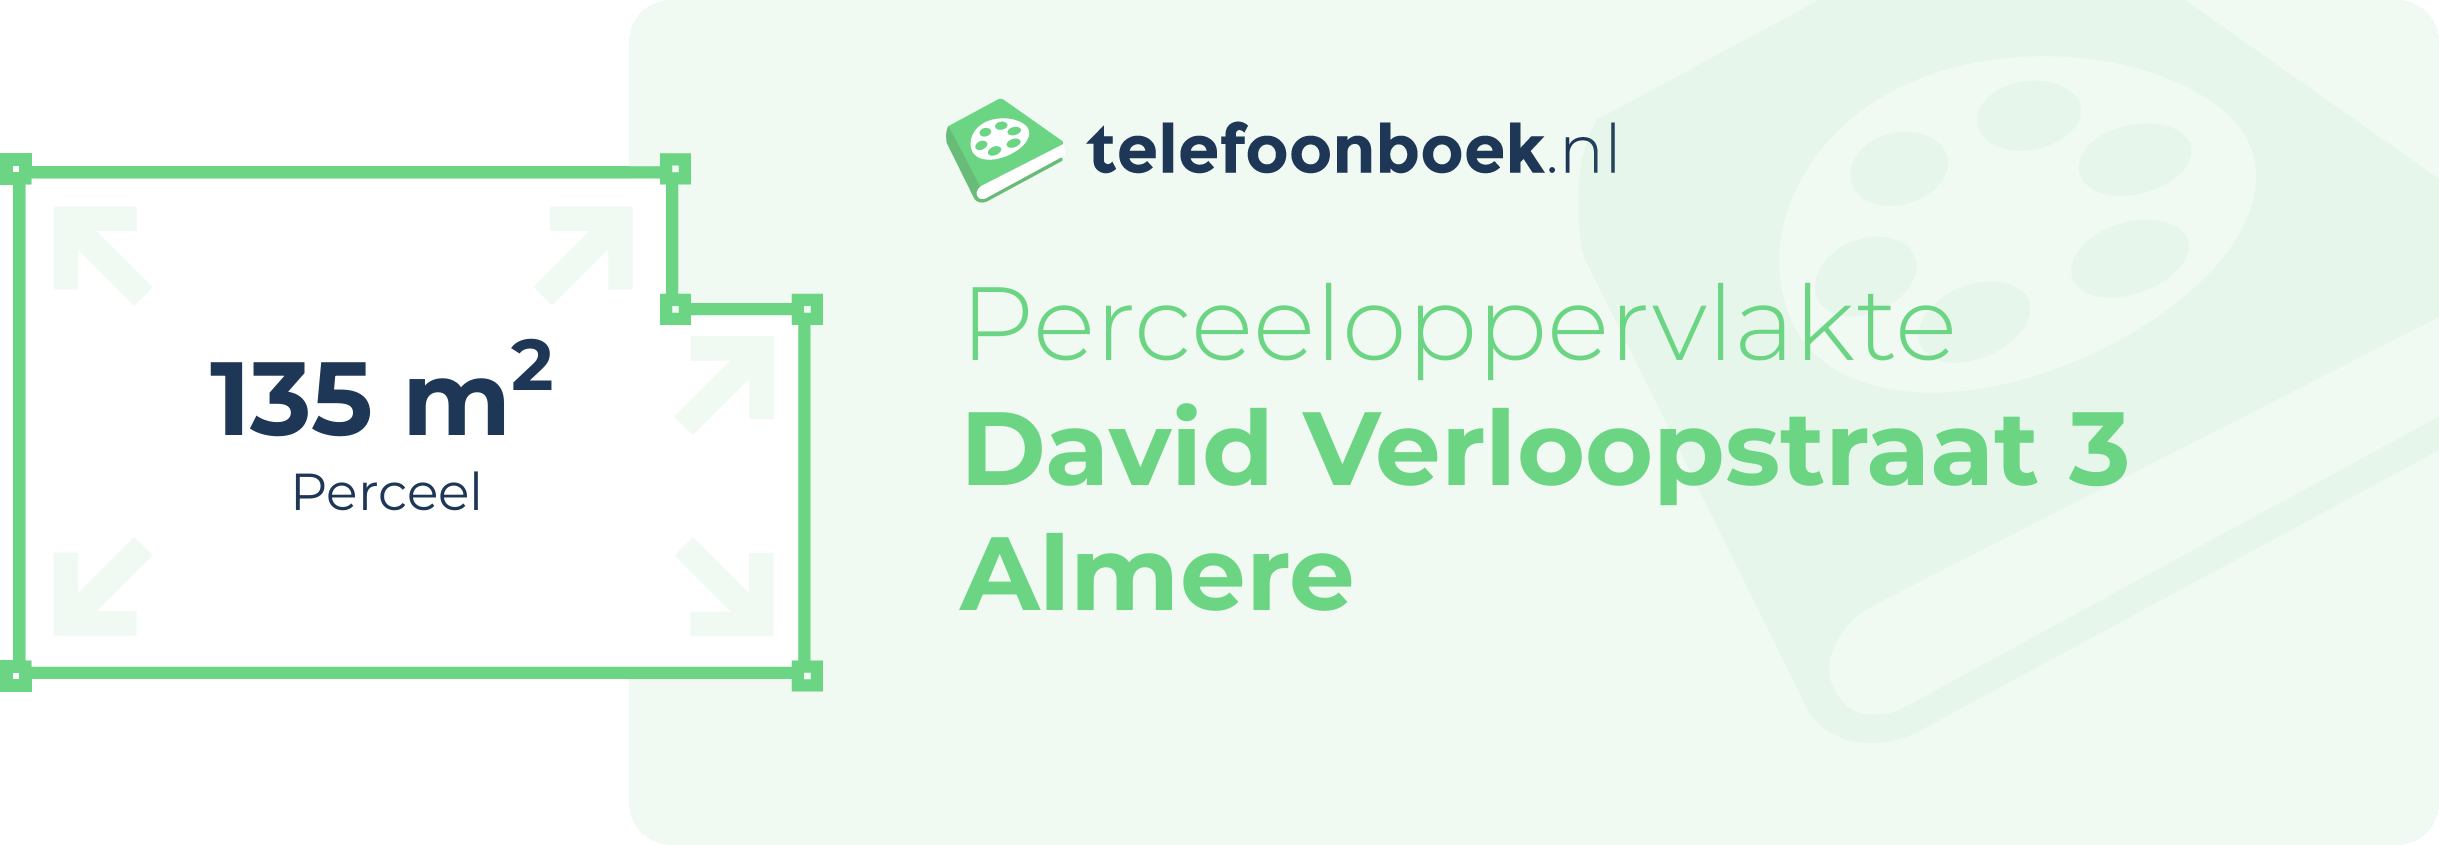 Perceeloppervlakte David Verloopstraat 3 Almere